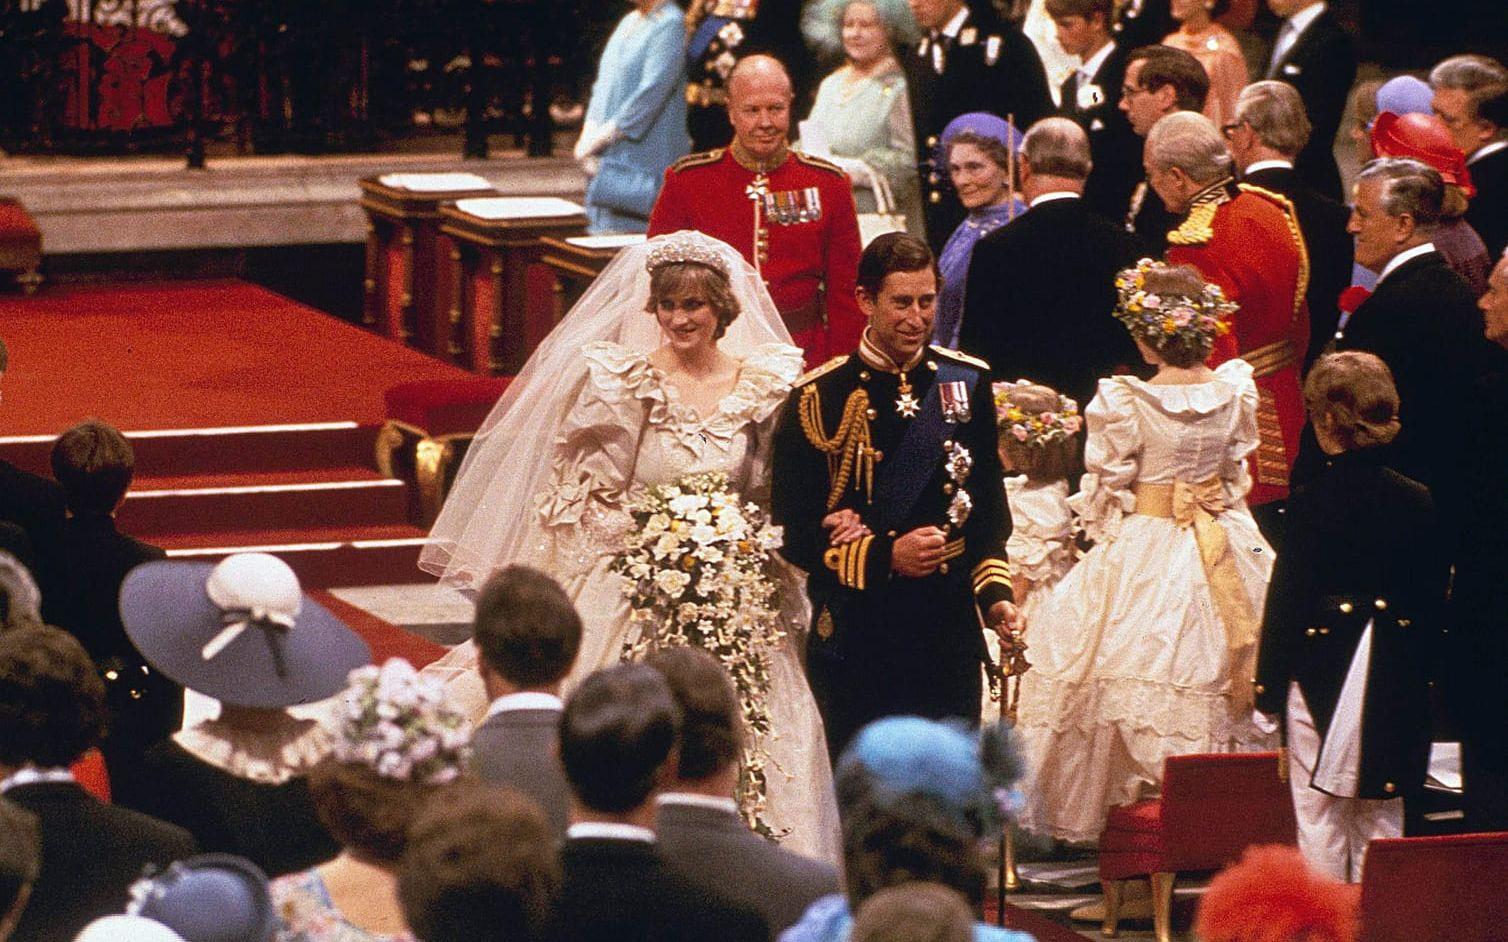 CHARLES OCH DIANAS BRÖLLOP. Det direktsända bröllopet mellan Prinse Charles och Diana den 29 juli 1981 sågs av cirka 750 miljoner människor världen över. Foto: TT